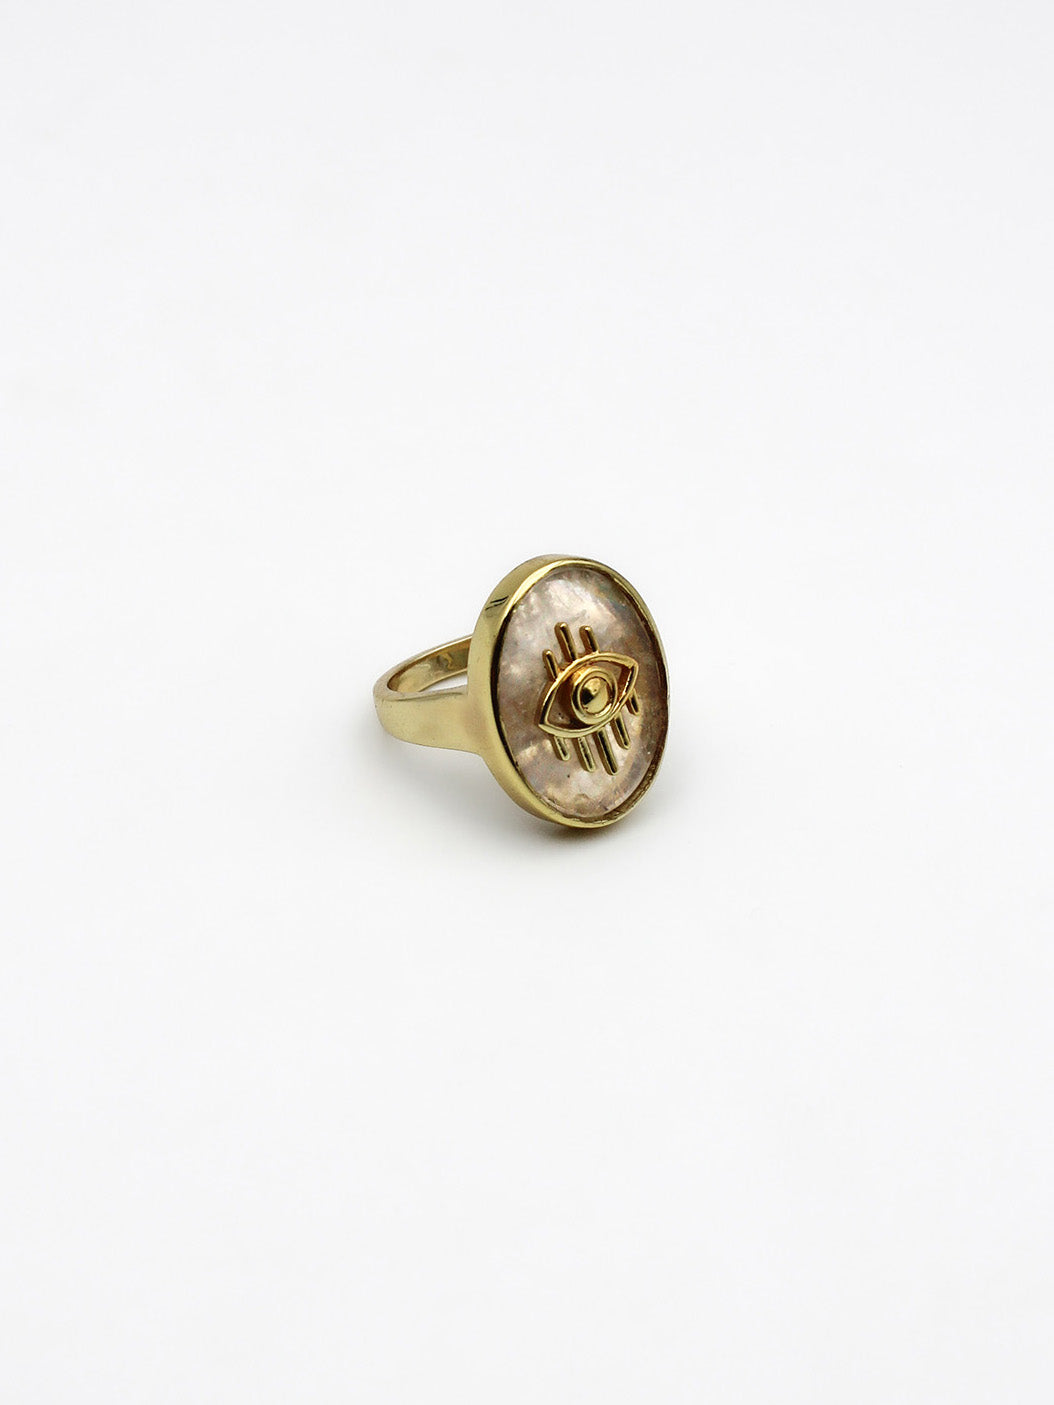 Bague oeil - gamme EVE - laiton doré à l’or fin - pierre naturelle : pierre de lune - nouvelle collection 23FW - l’Atelier des Dames